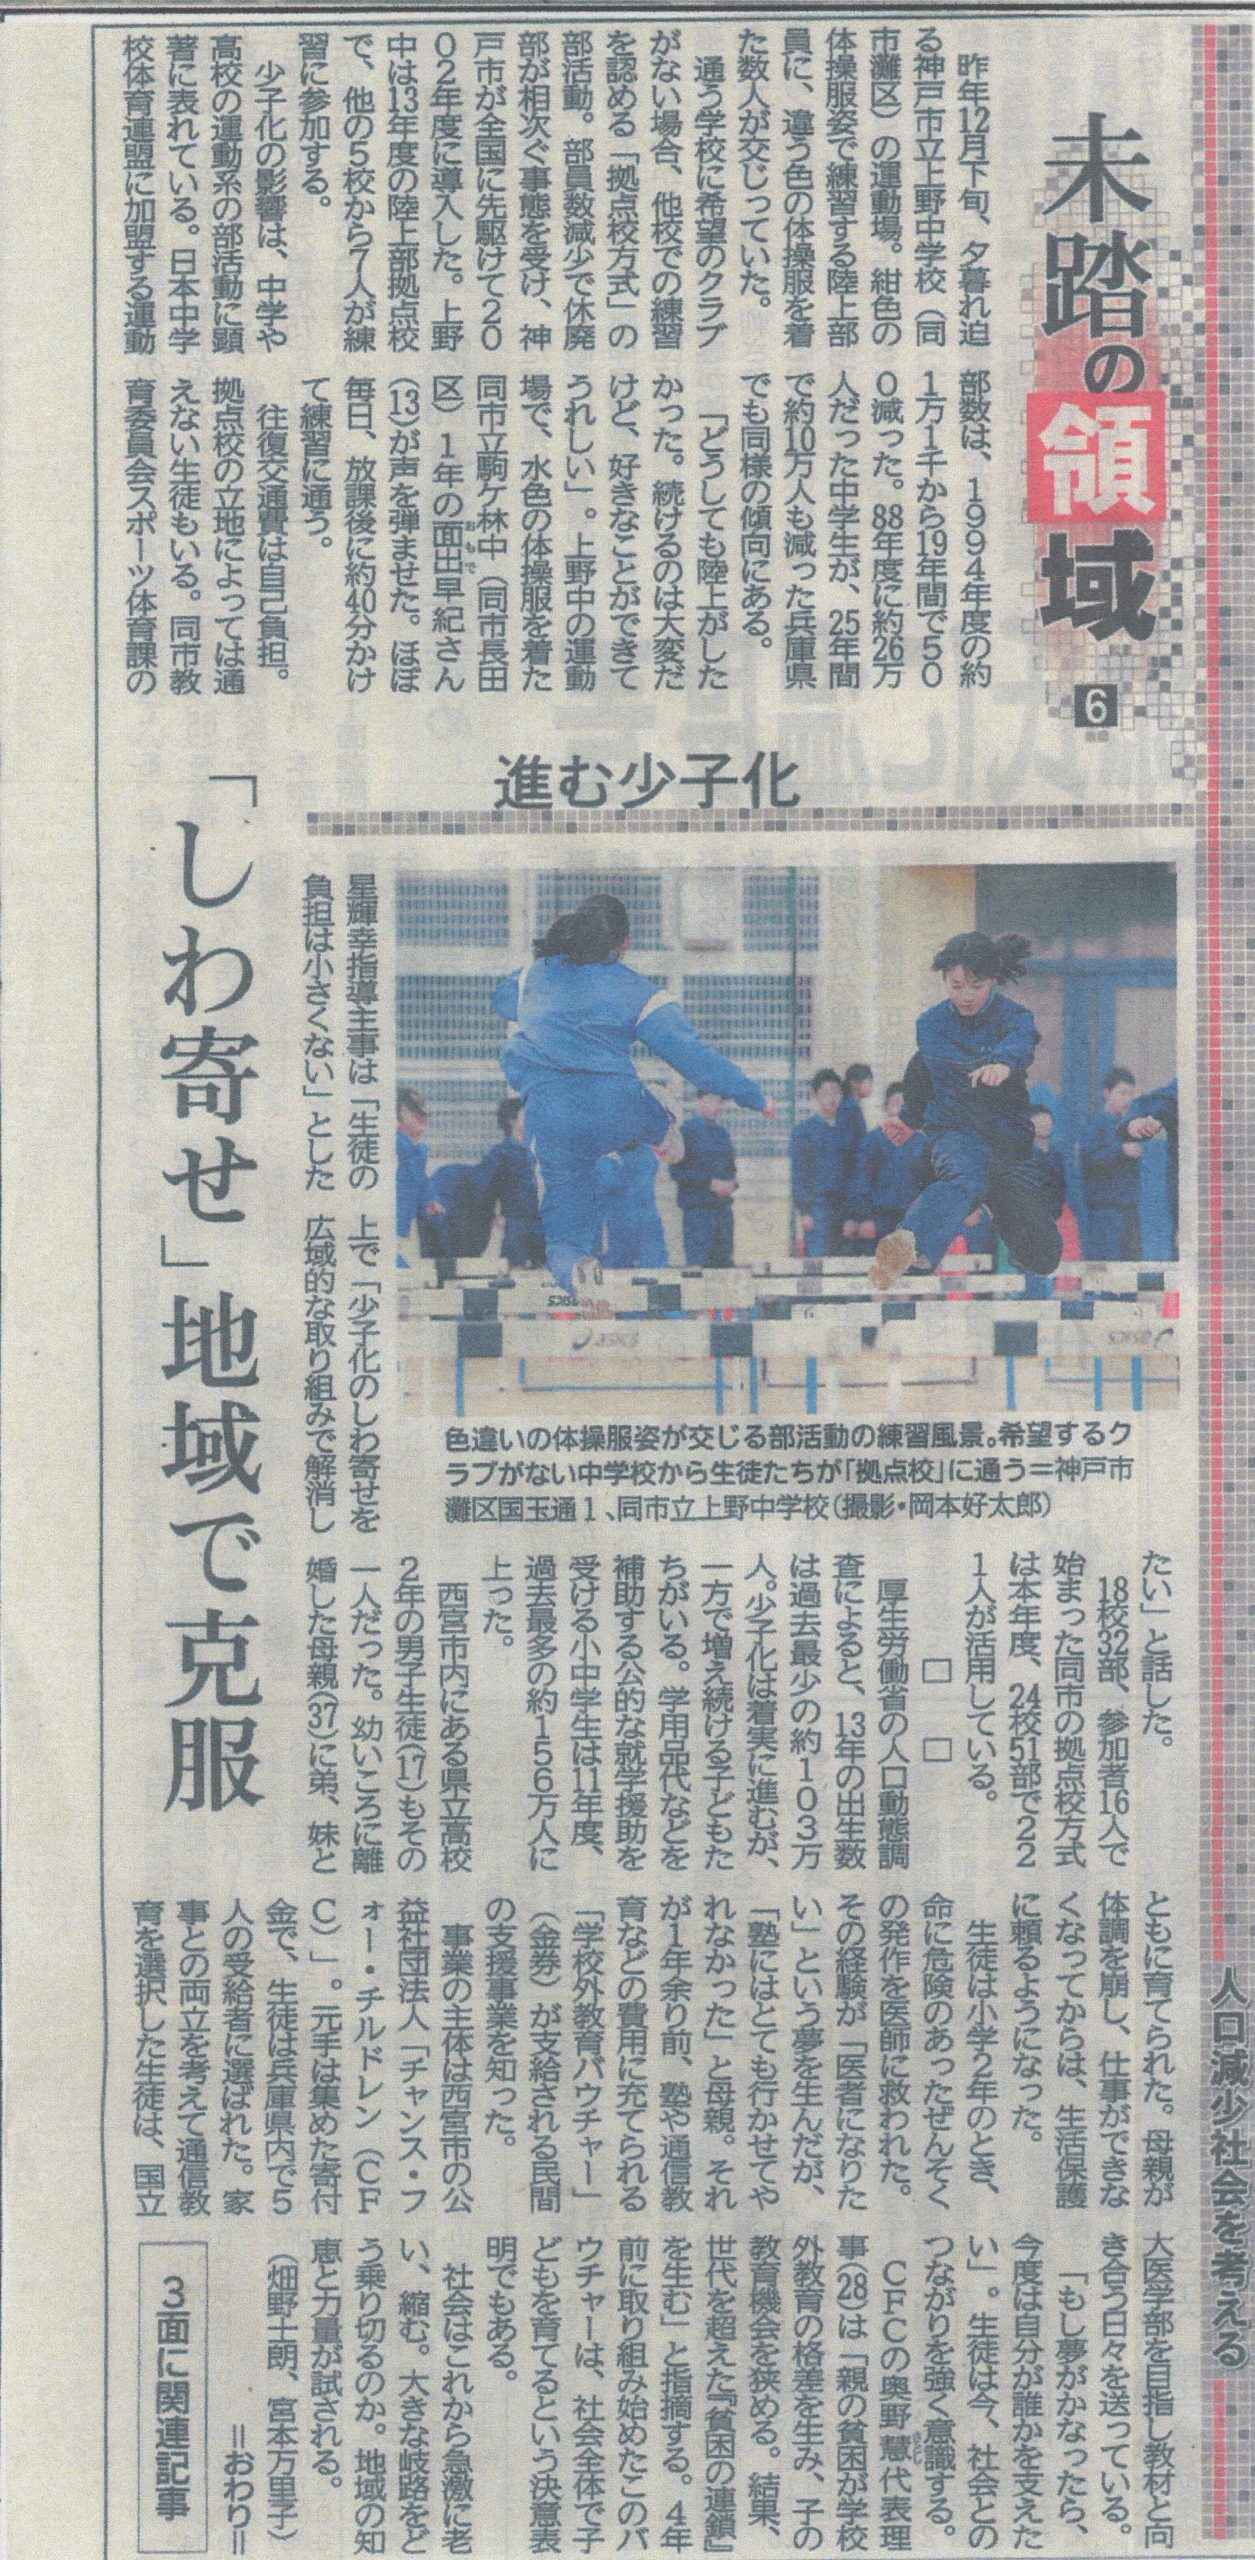 1/8 神戸新聞の一面に掲載いただきました